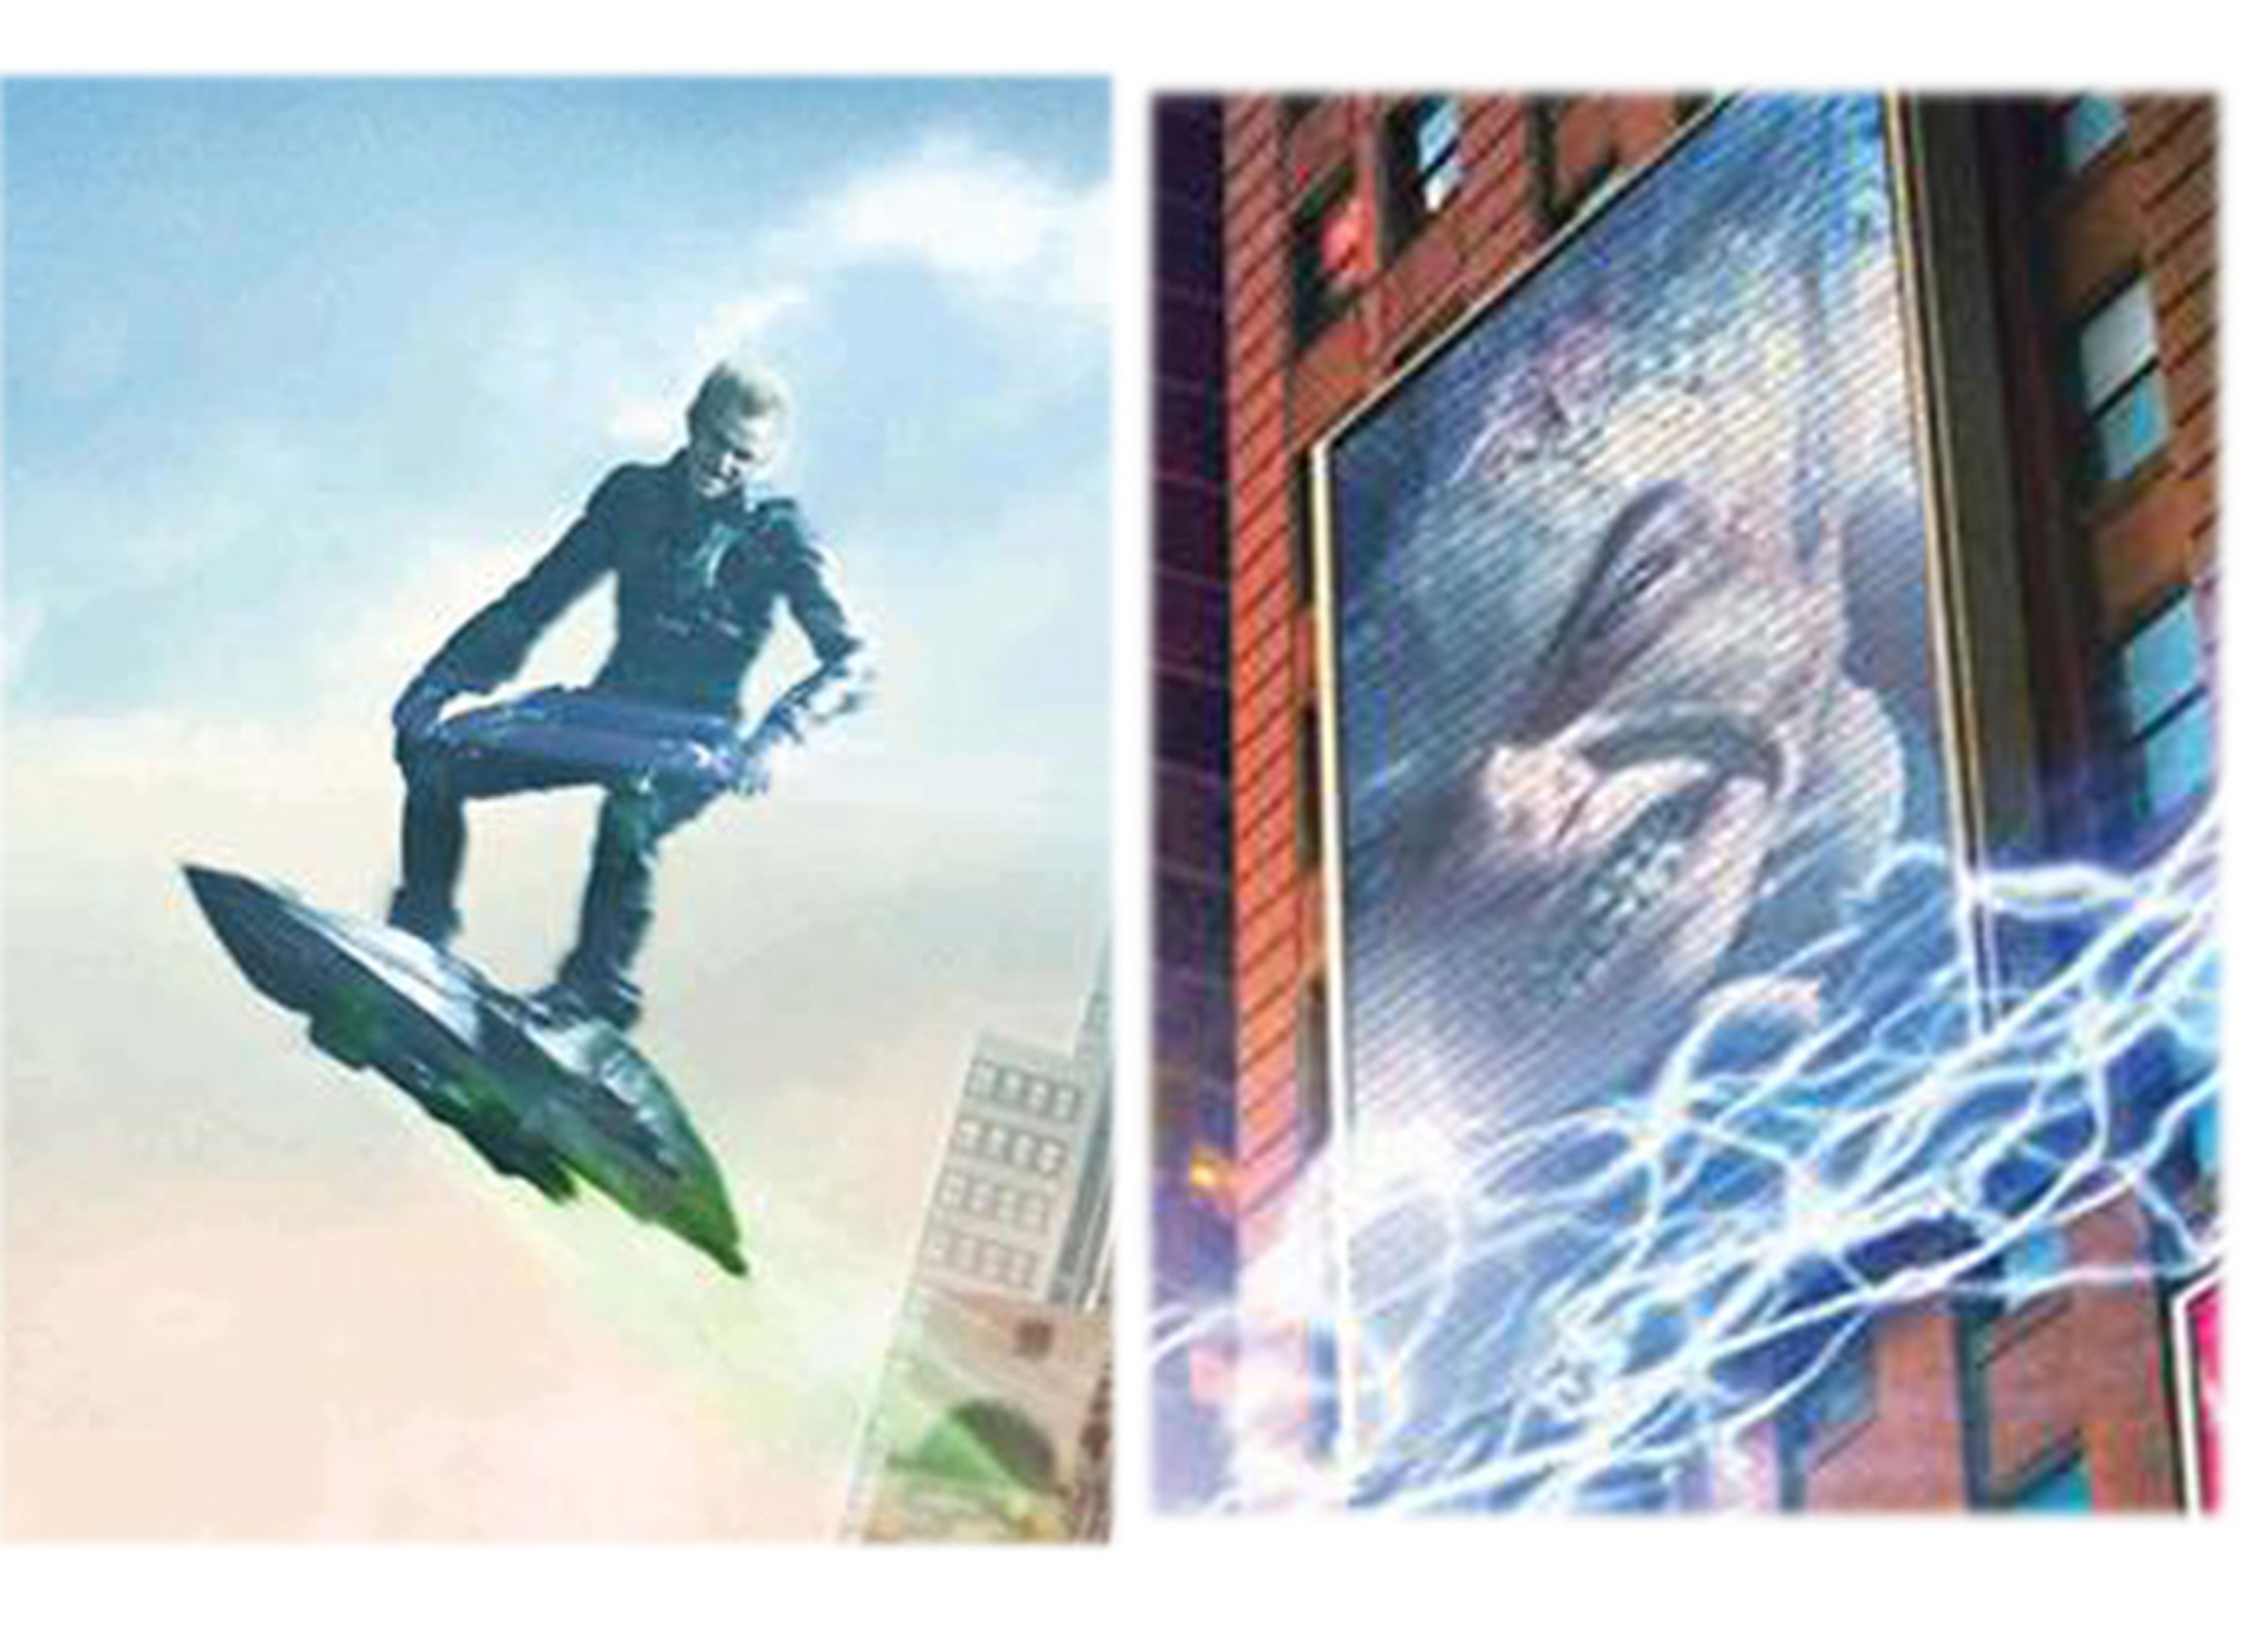 Banner oficial y nuevas fotos de Amazing Spider-man 2